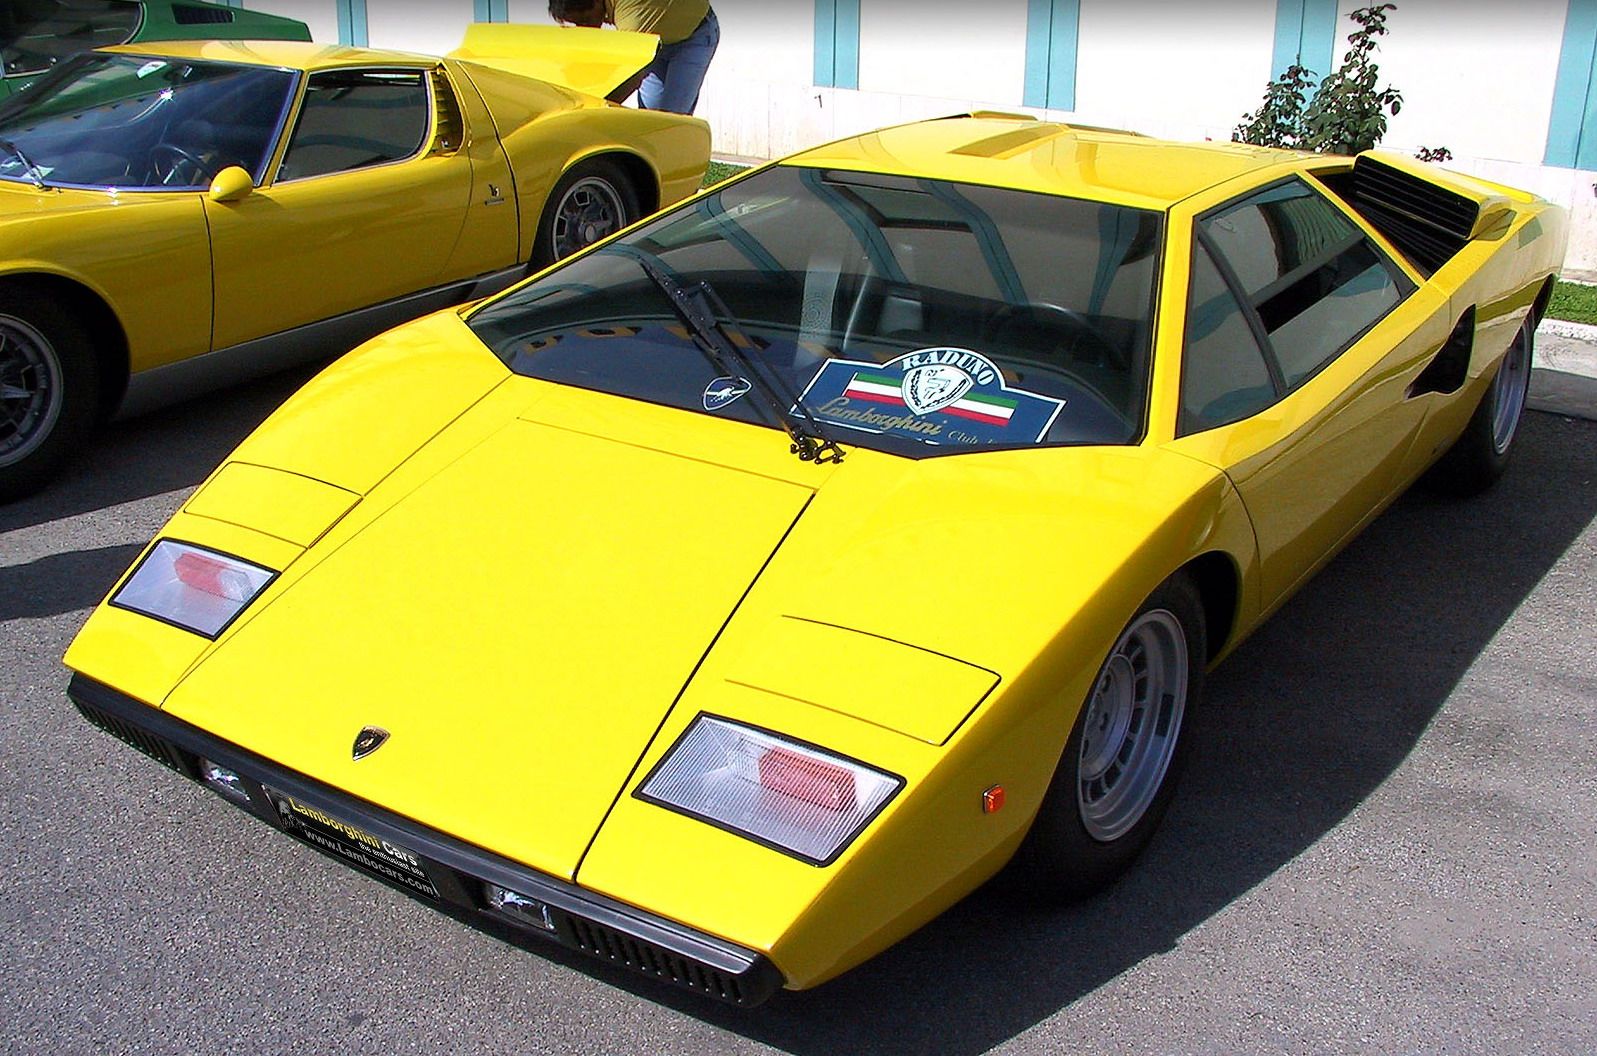 Lamborghini Countach 1974. Lamborghini Countach lp400. Countach lp400 Yellow. Lamborghini Countach LP 800 цвета. Амазинг желтый